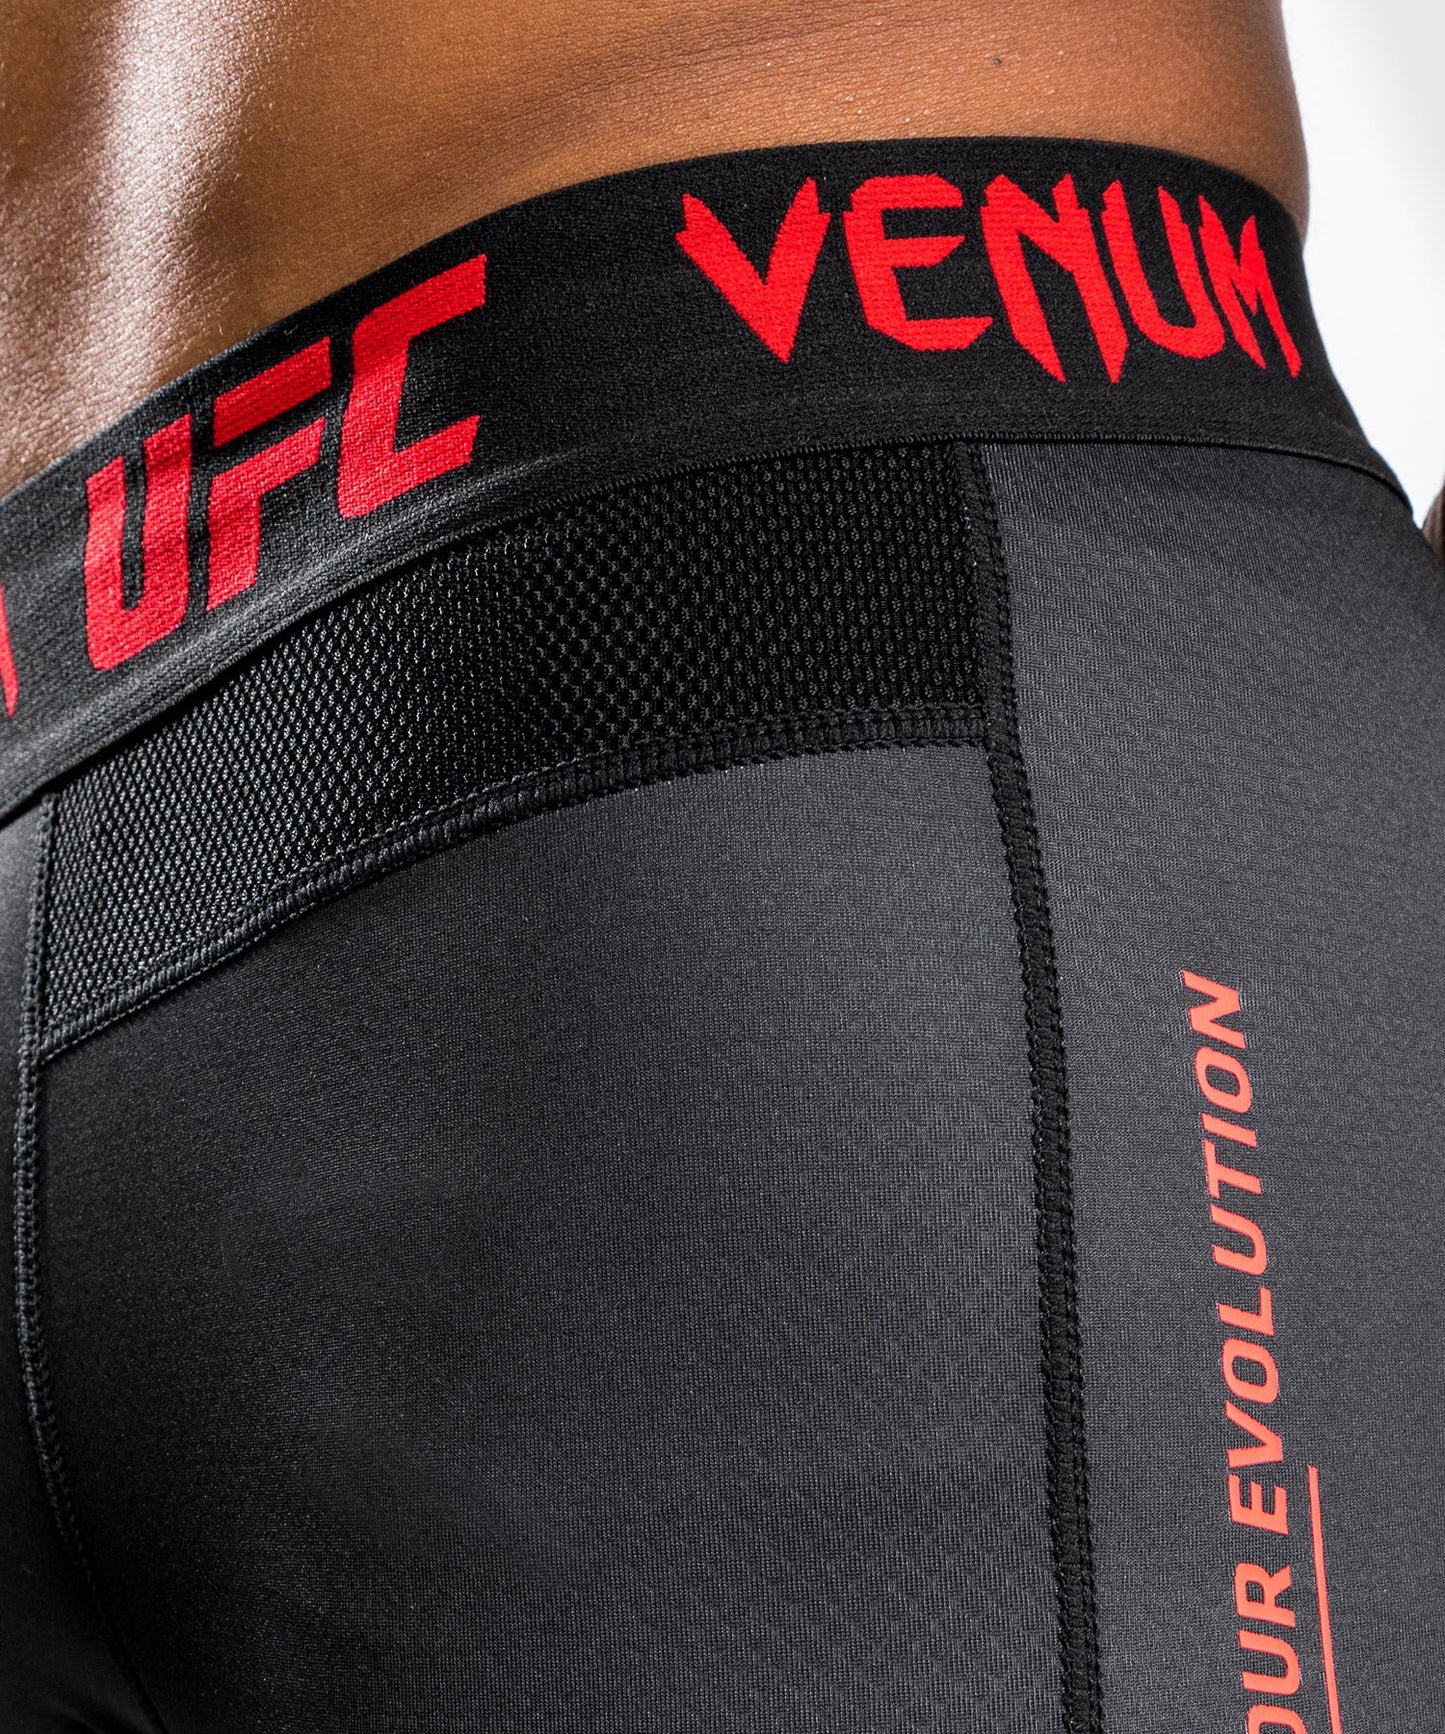 UFC Venum Performance Institute Spat - Black/Red